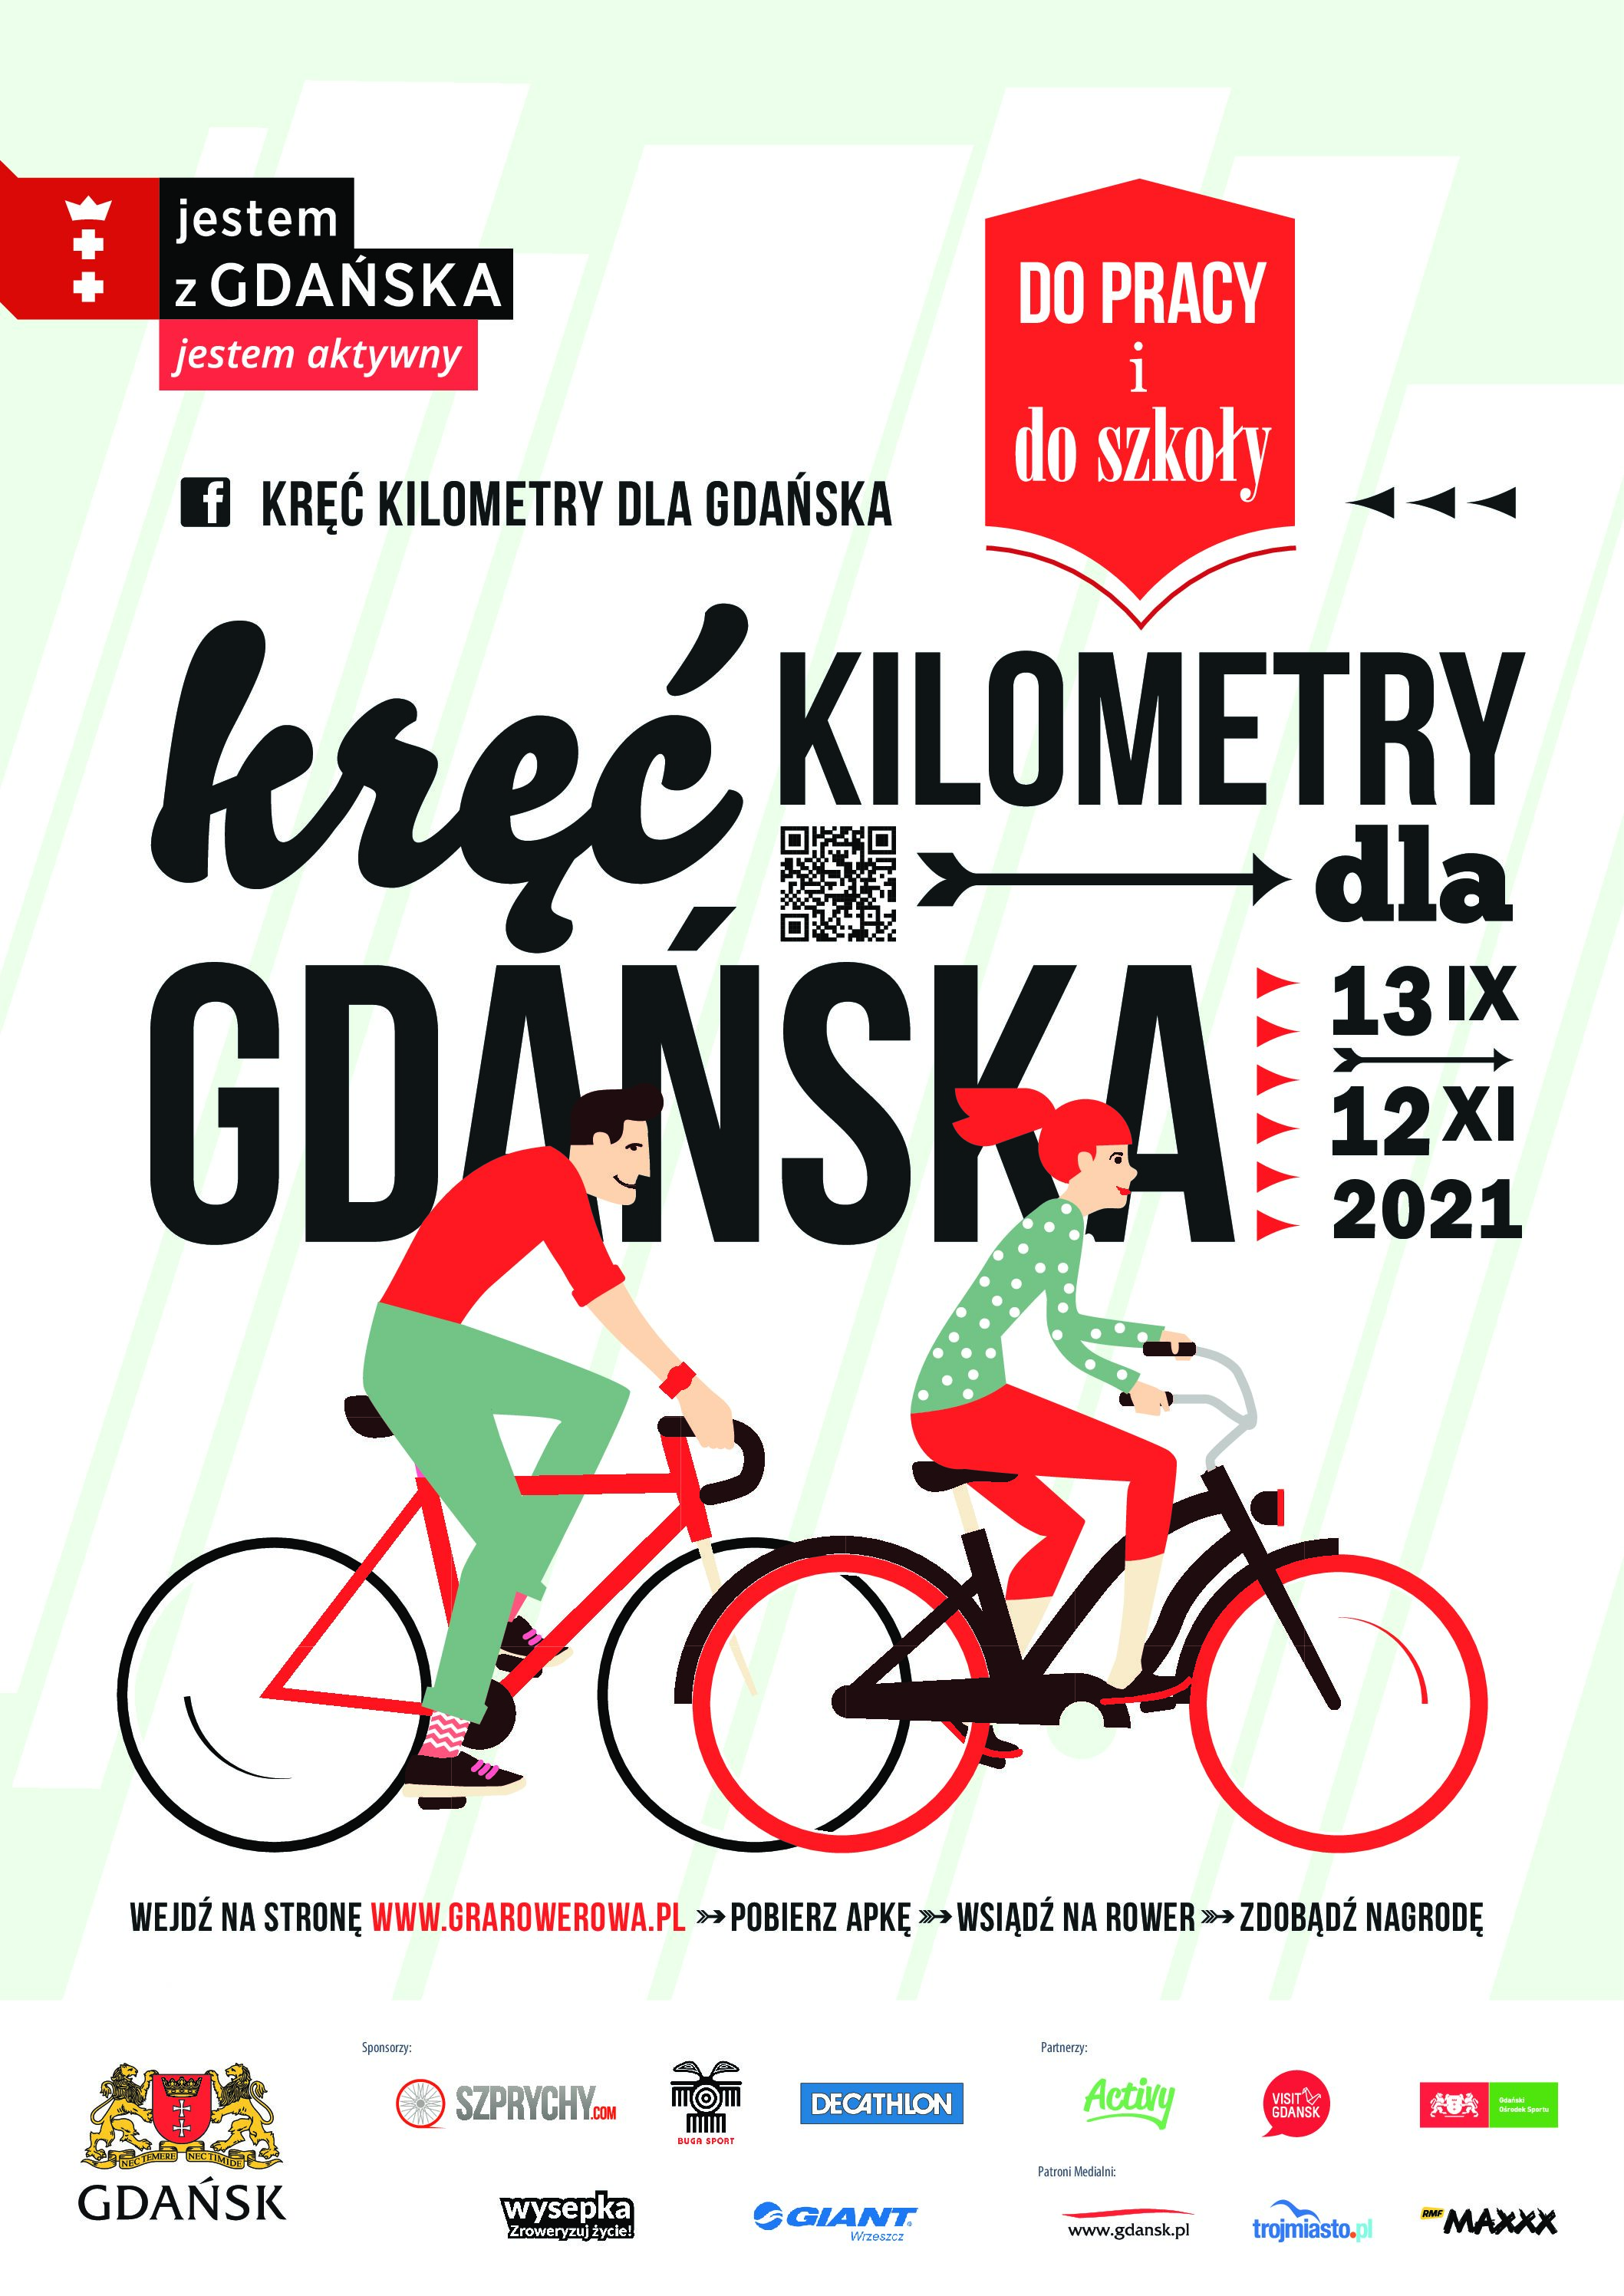 Akcja Kręć kilometry dla Gdańska